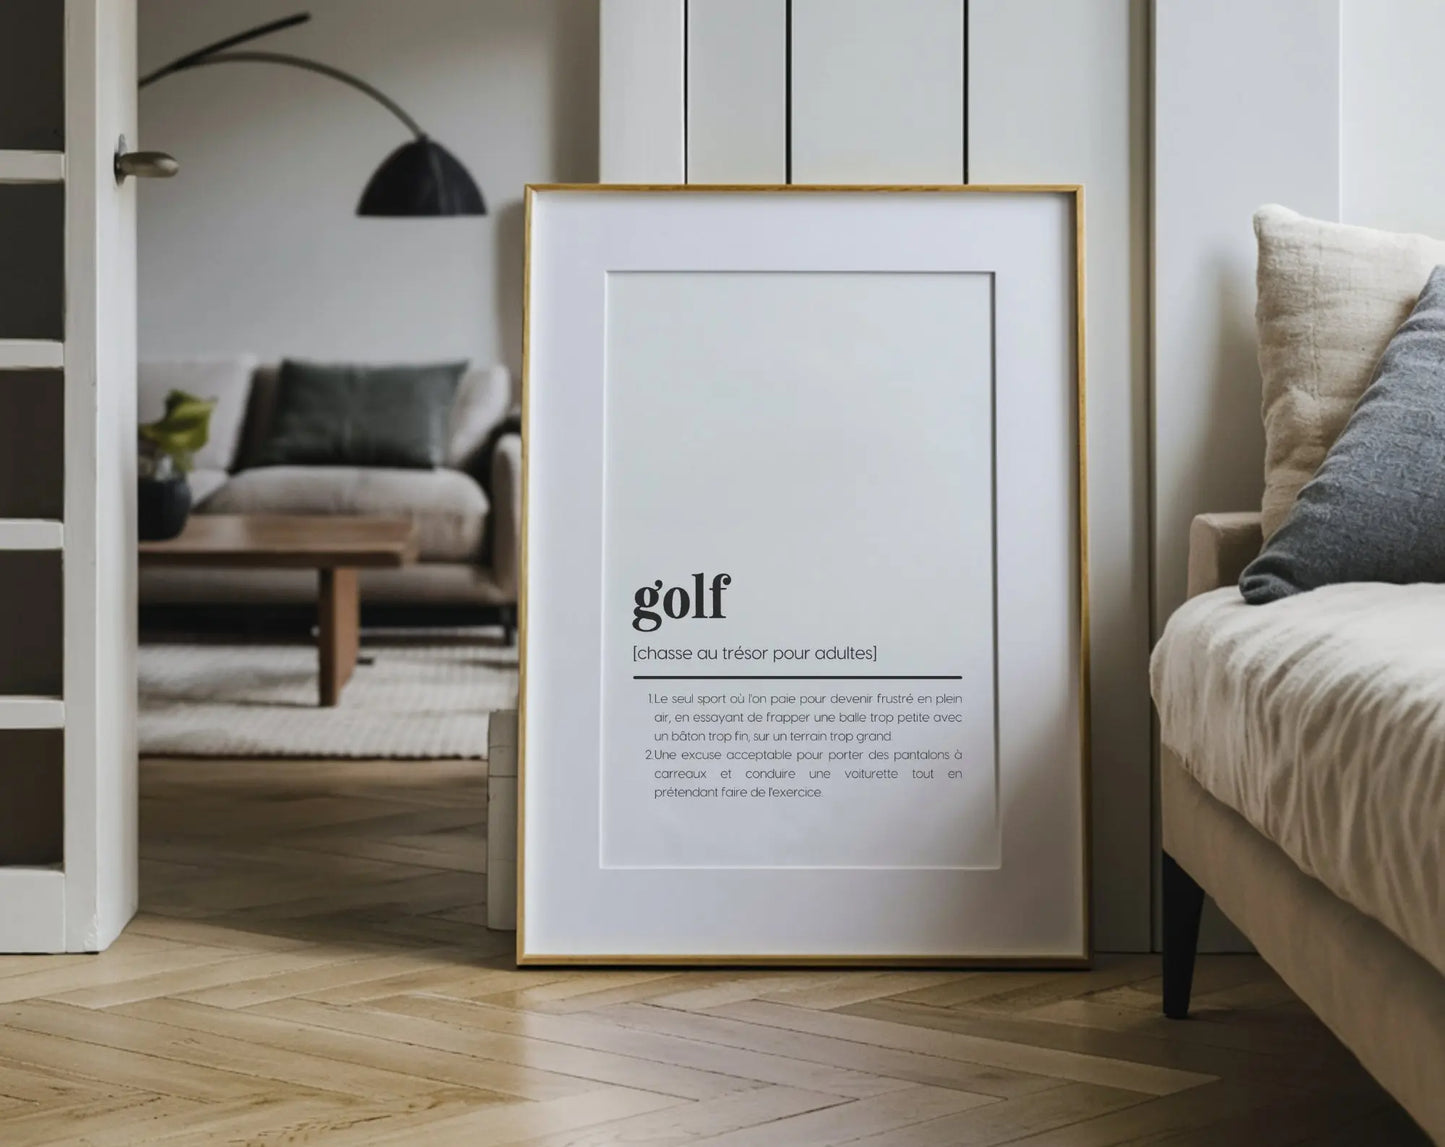 Affiche définition golf - Affiche définition sport - FLTMfrance